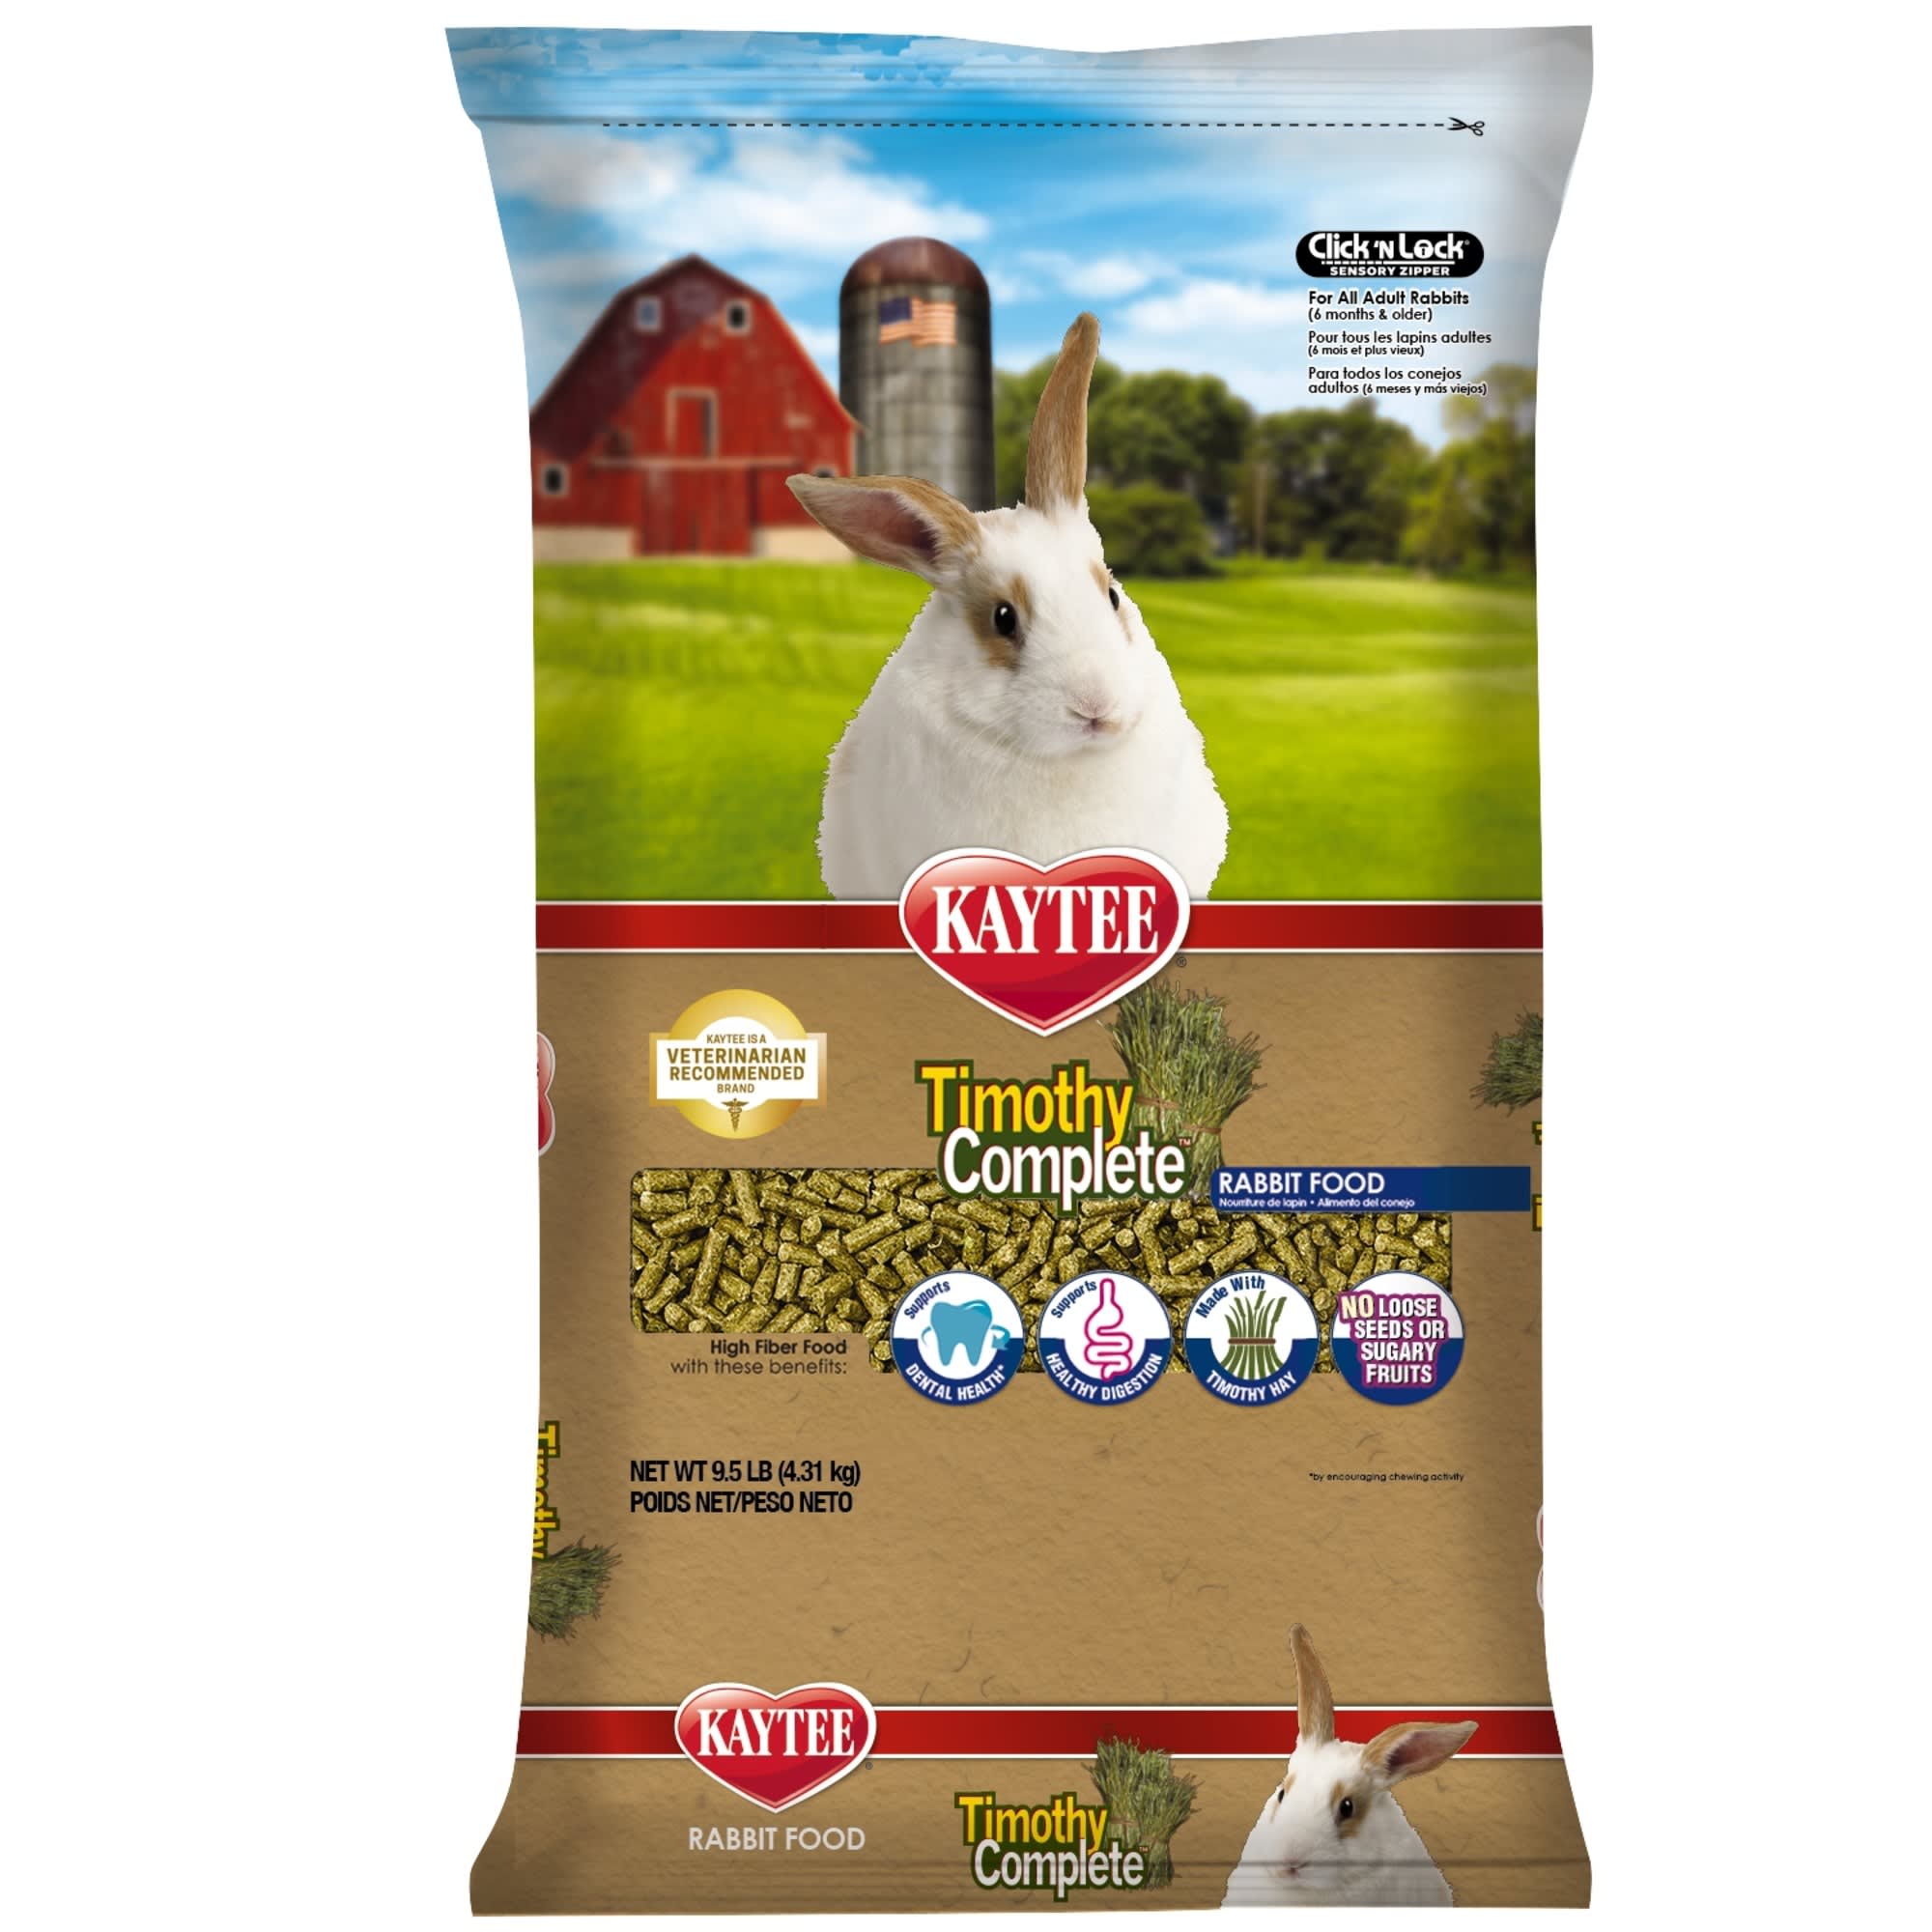 is alfalfa hay good for bunnies